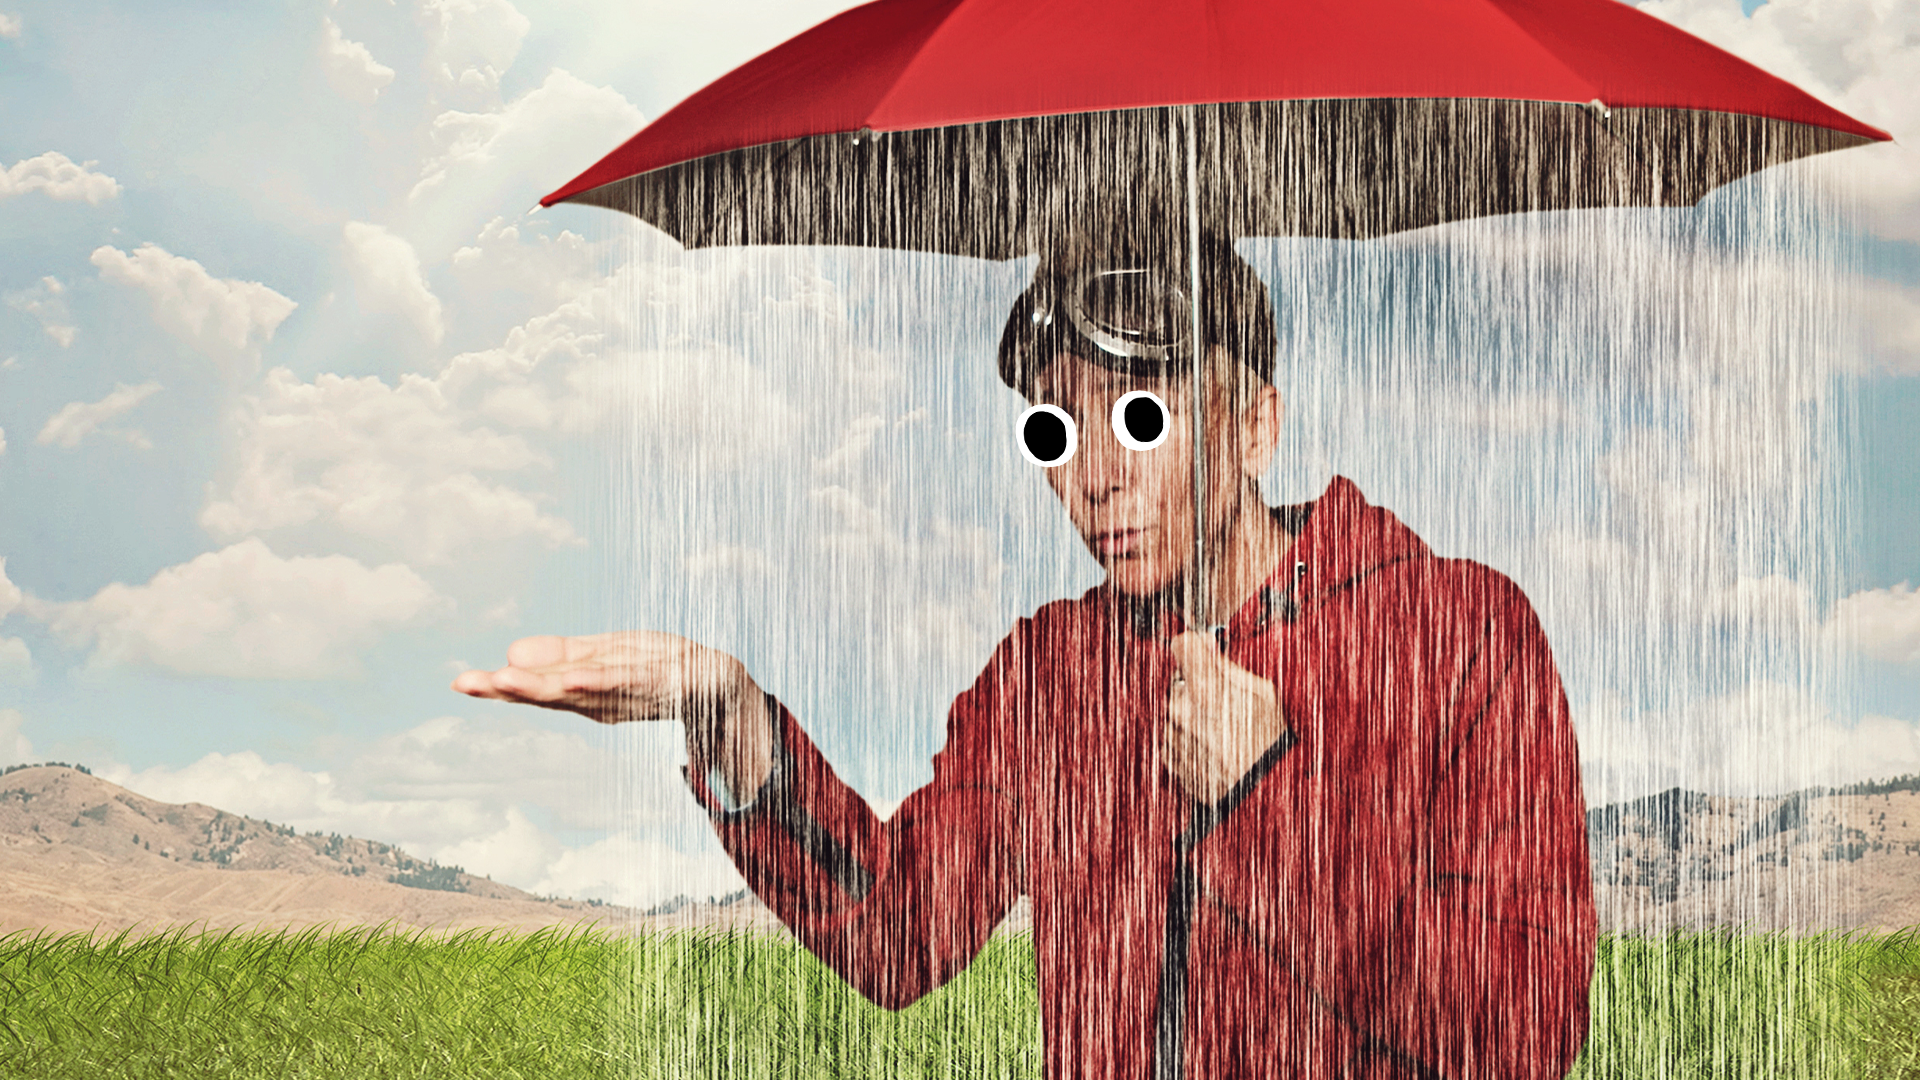 A person under a rainy umbrella